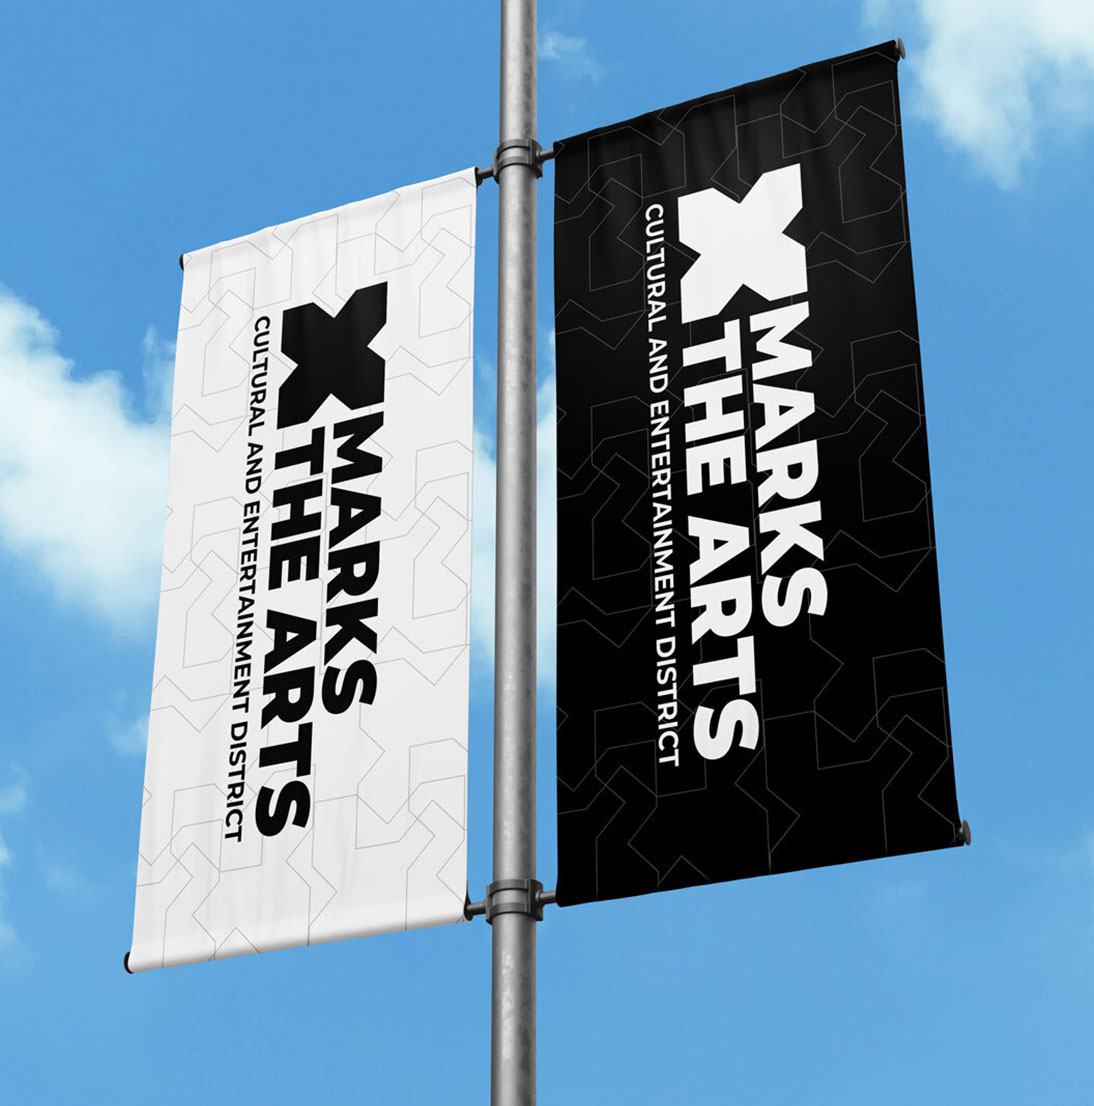 XMTA Street Banners 2 2